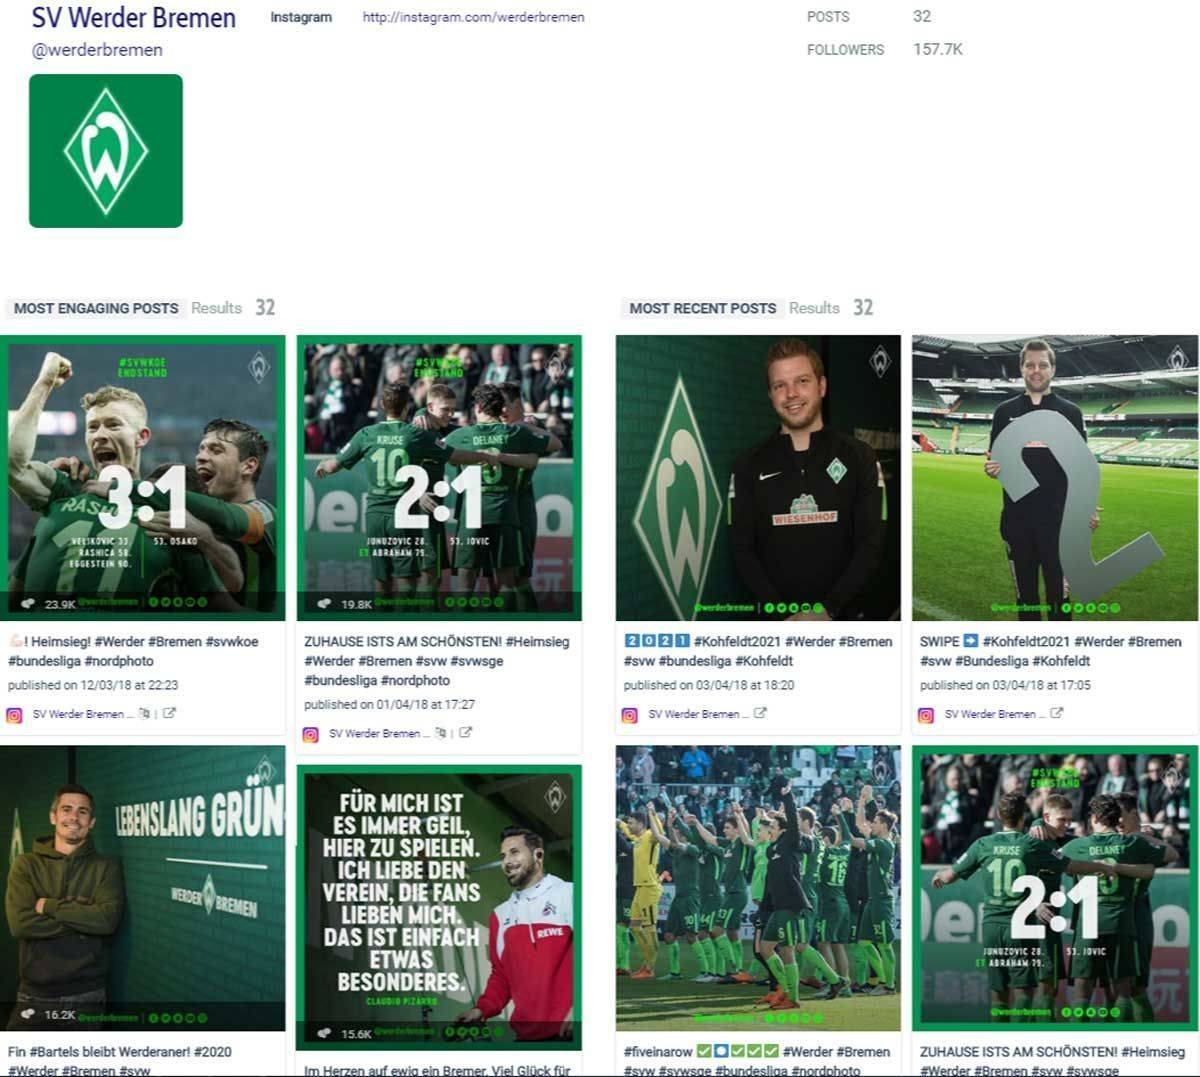 Beim Geofencing nach Infokontor gewinnt Werder Bremen den 28. Spieltag.